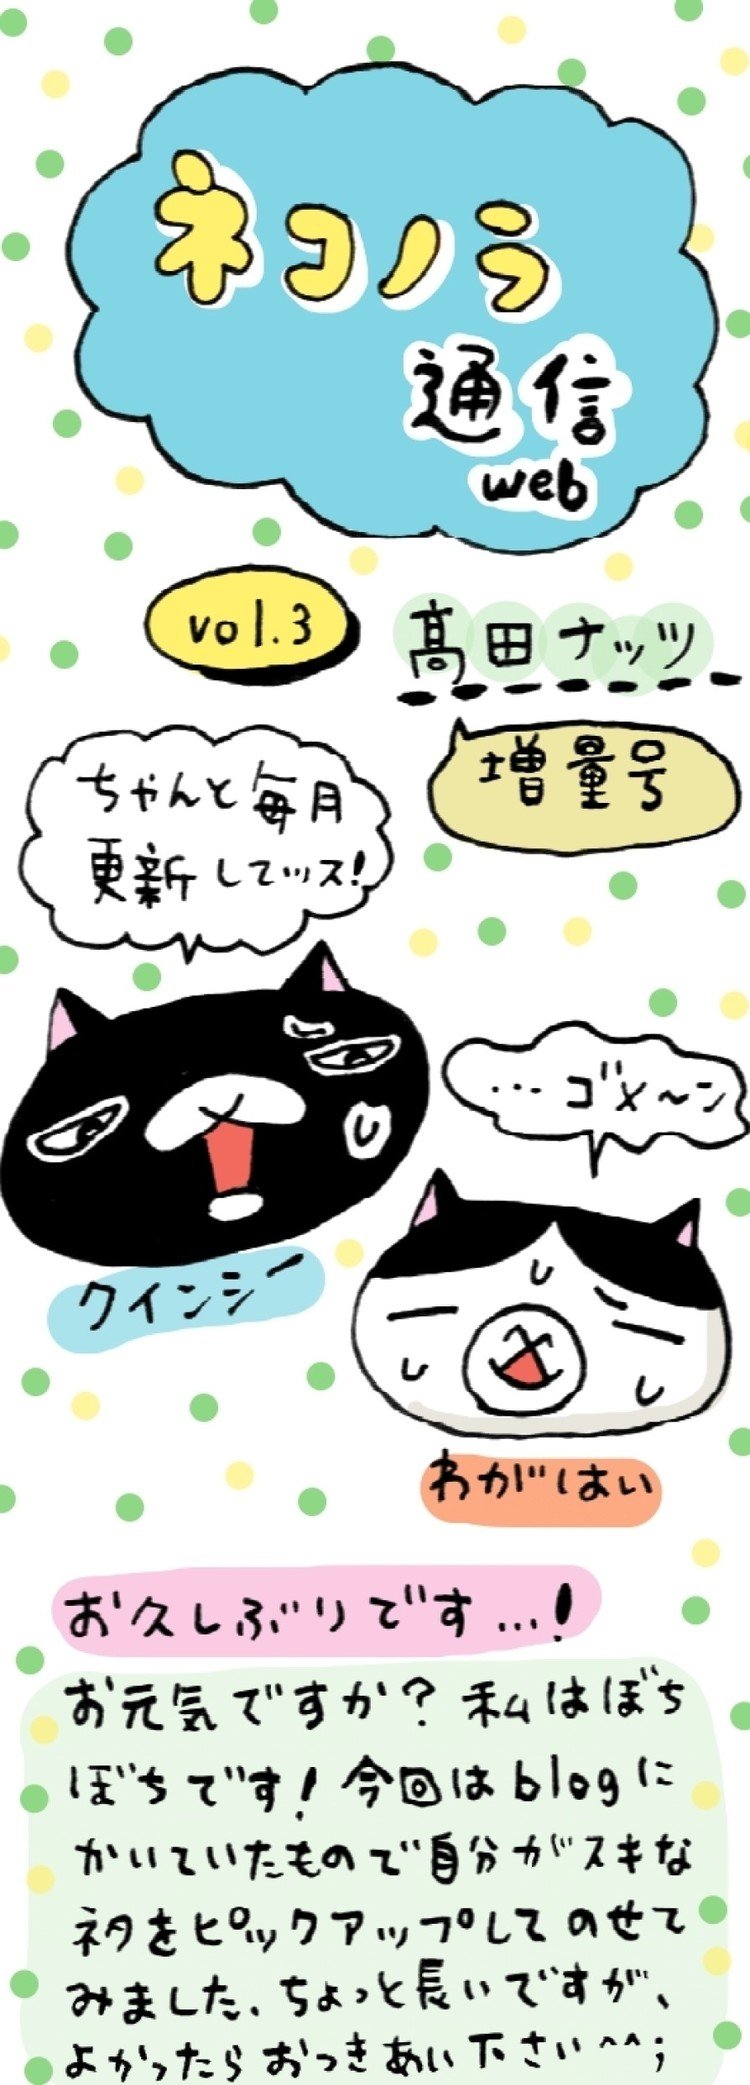 天真爛漫な黒猫・クインシー(♂)と、ちょっと天然な富士額・わがはい(♀)の、のほほんな日々 part3